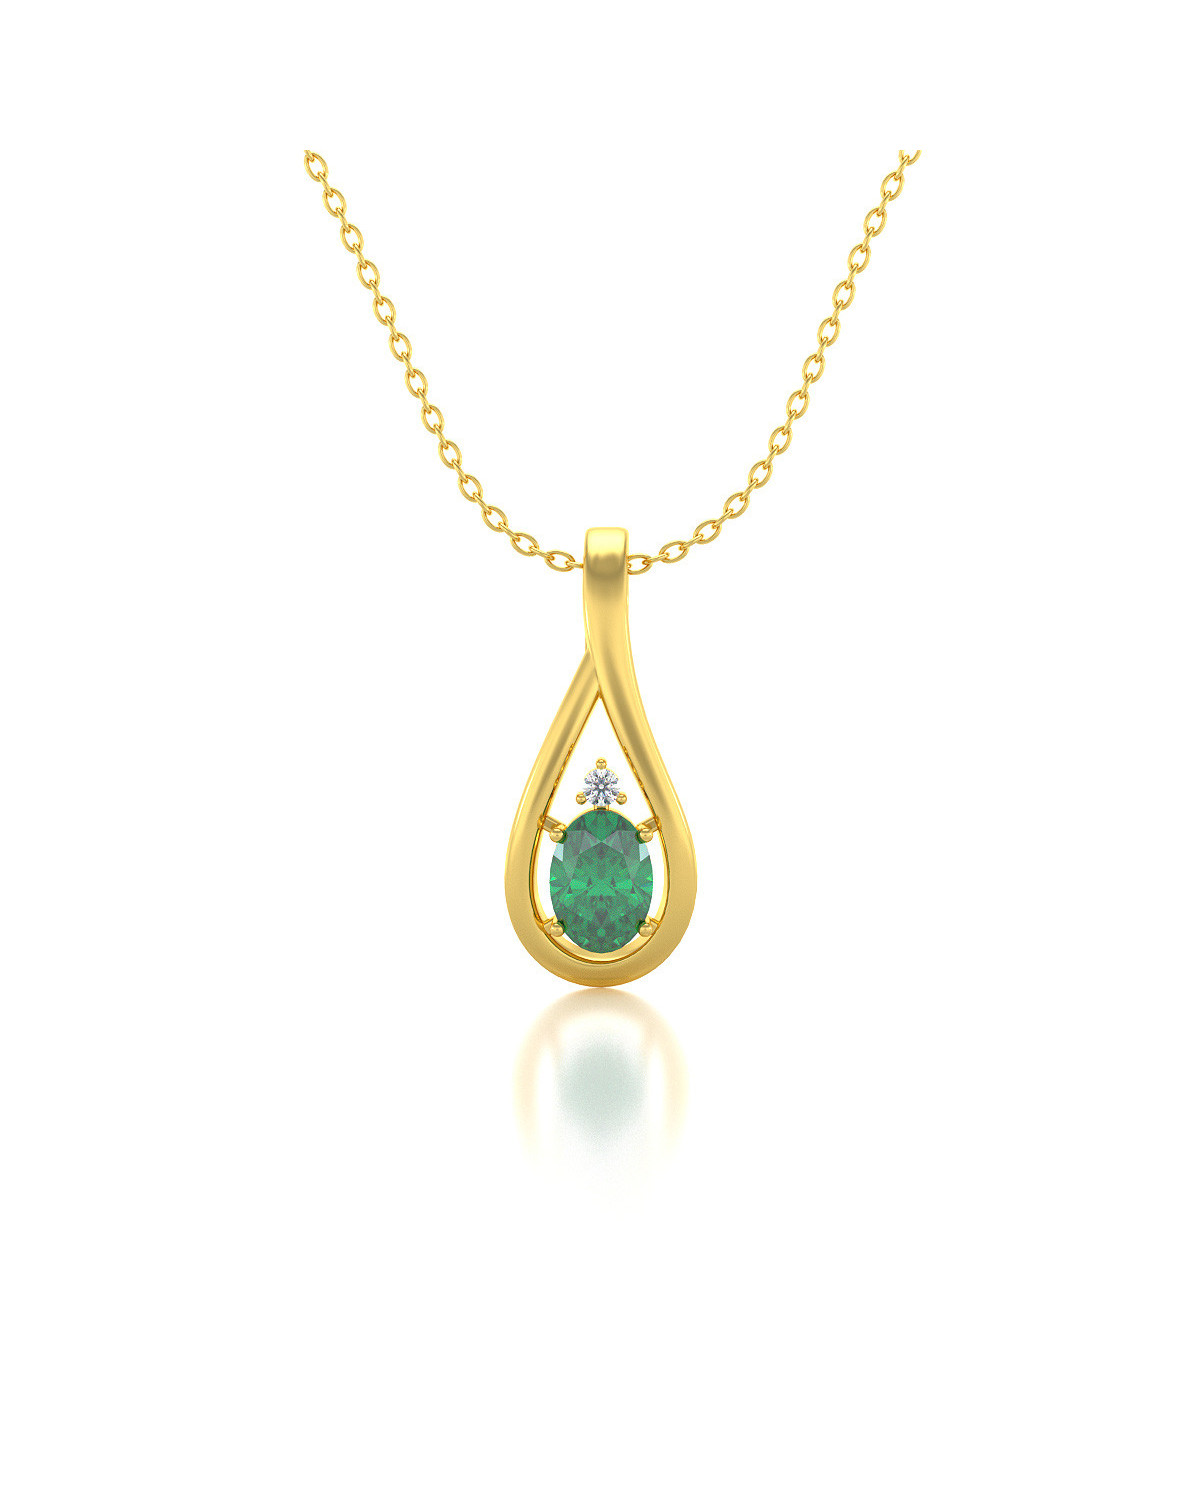 Collar Colgante de Oro 14K Esmeralda y Diamantes Cadena Oro incluida